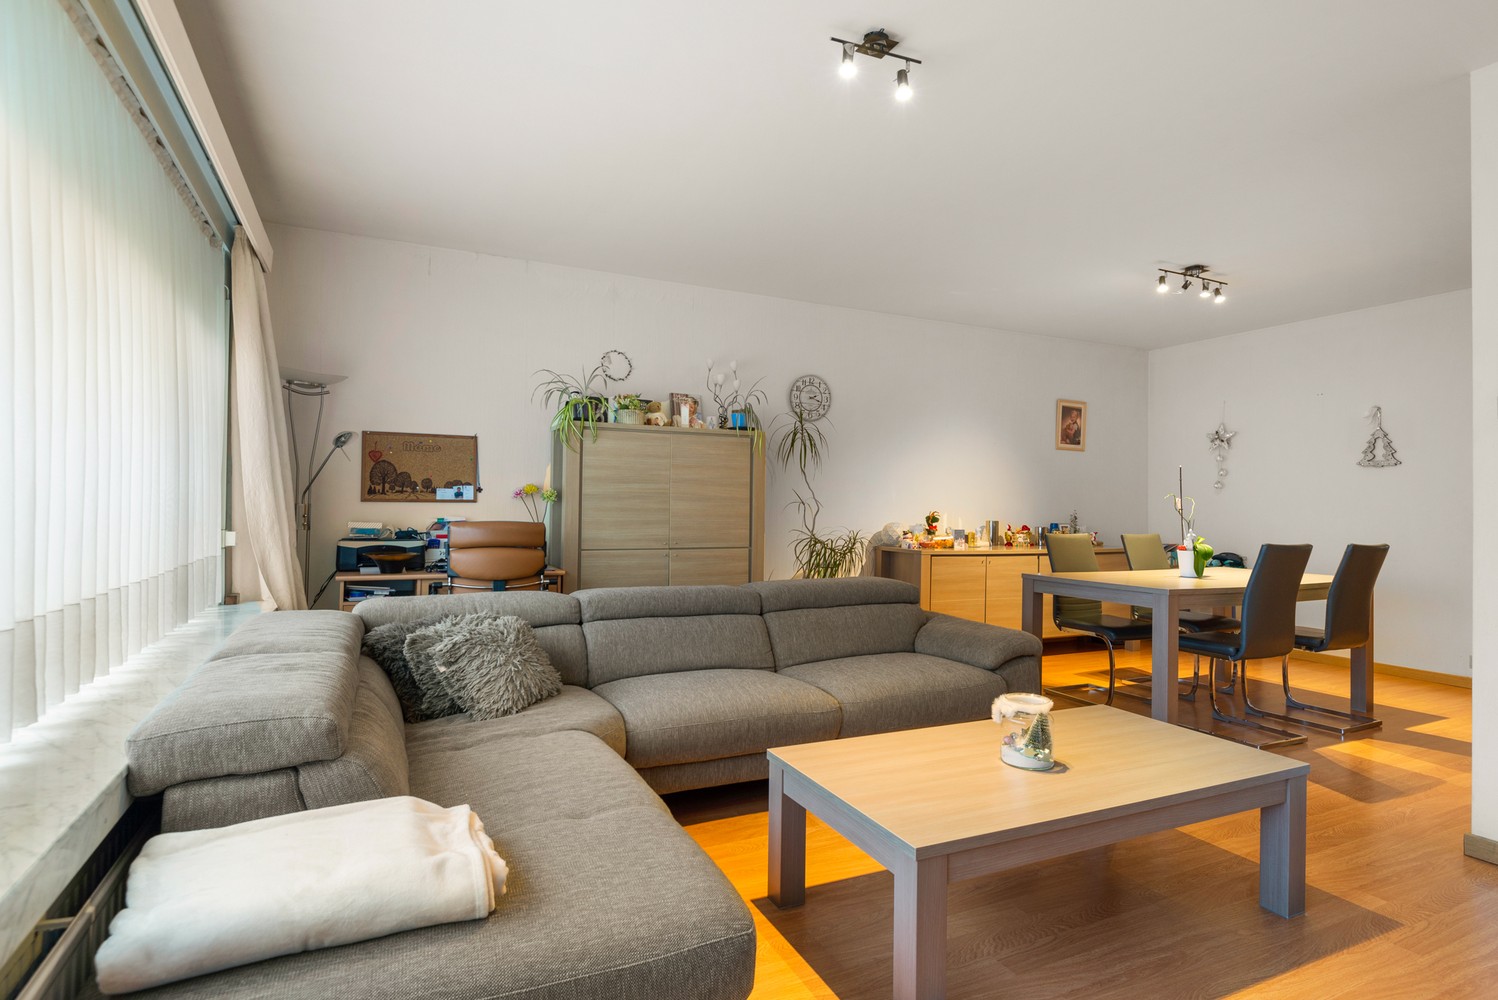 Gelijkvloers appartement met 2 slaapkamers & garage in Borsbeek! afbeelding 1